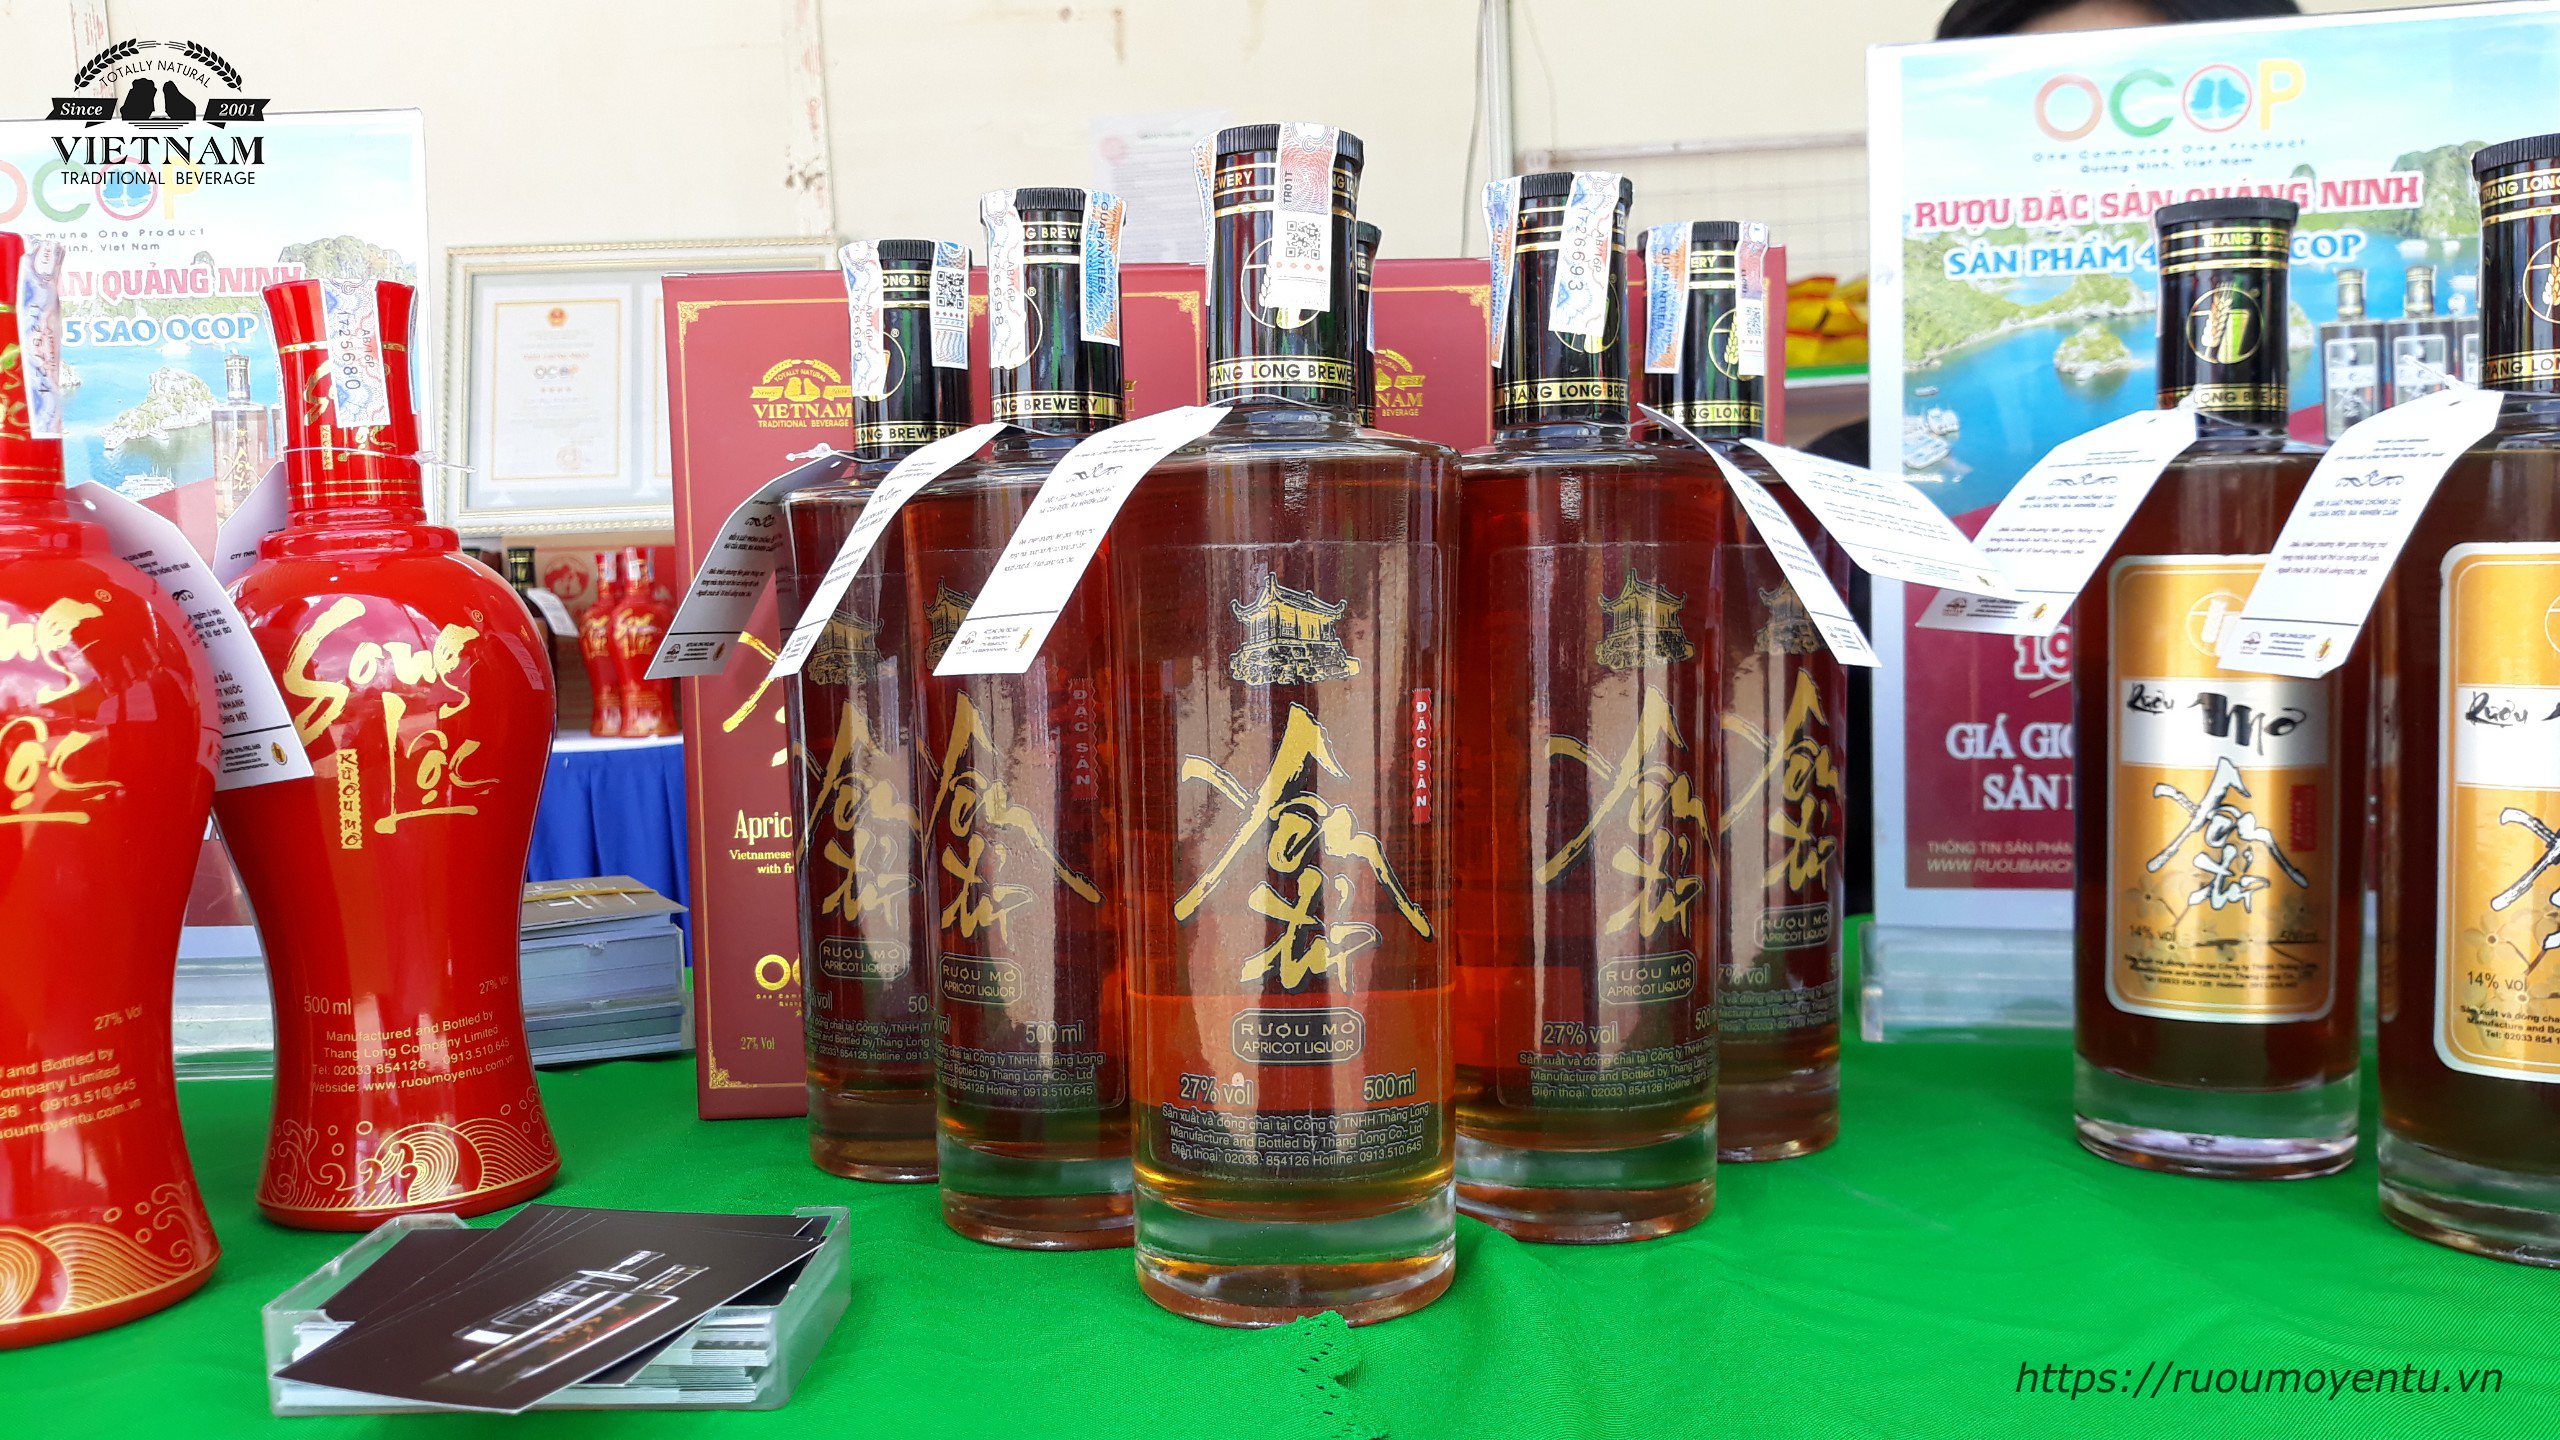 Rượu mơ Yên Tử – rượu đặc sản 5 sao OCOP – Đặc sản tiêu biểu của tỉnh Quảng Ninh